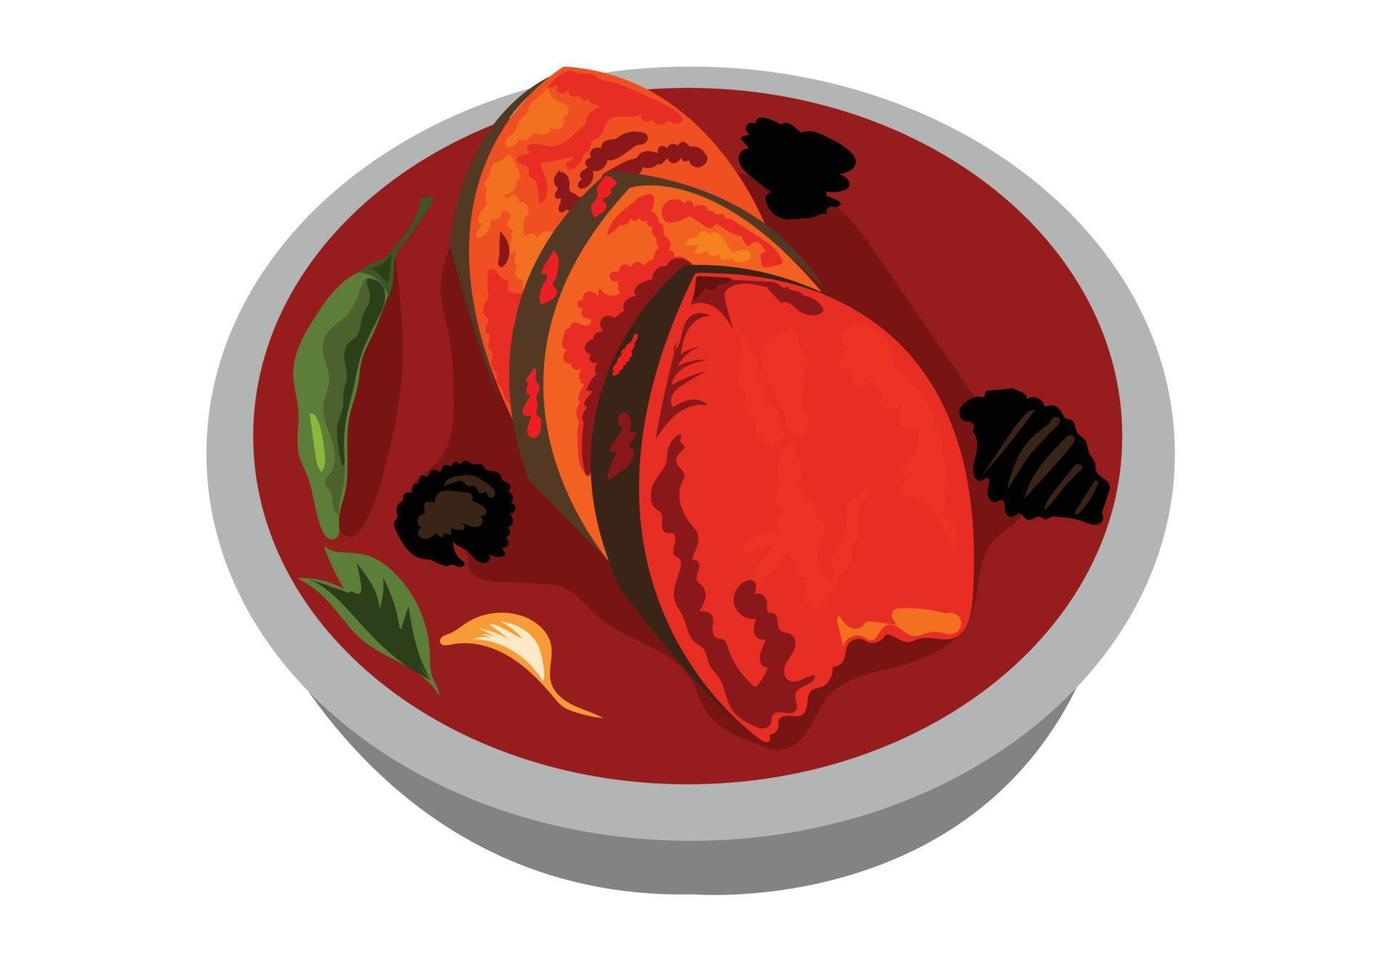 caril de peixe ilustração de comida indiana e paquistanesa vetor